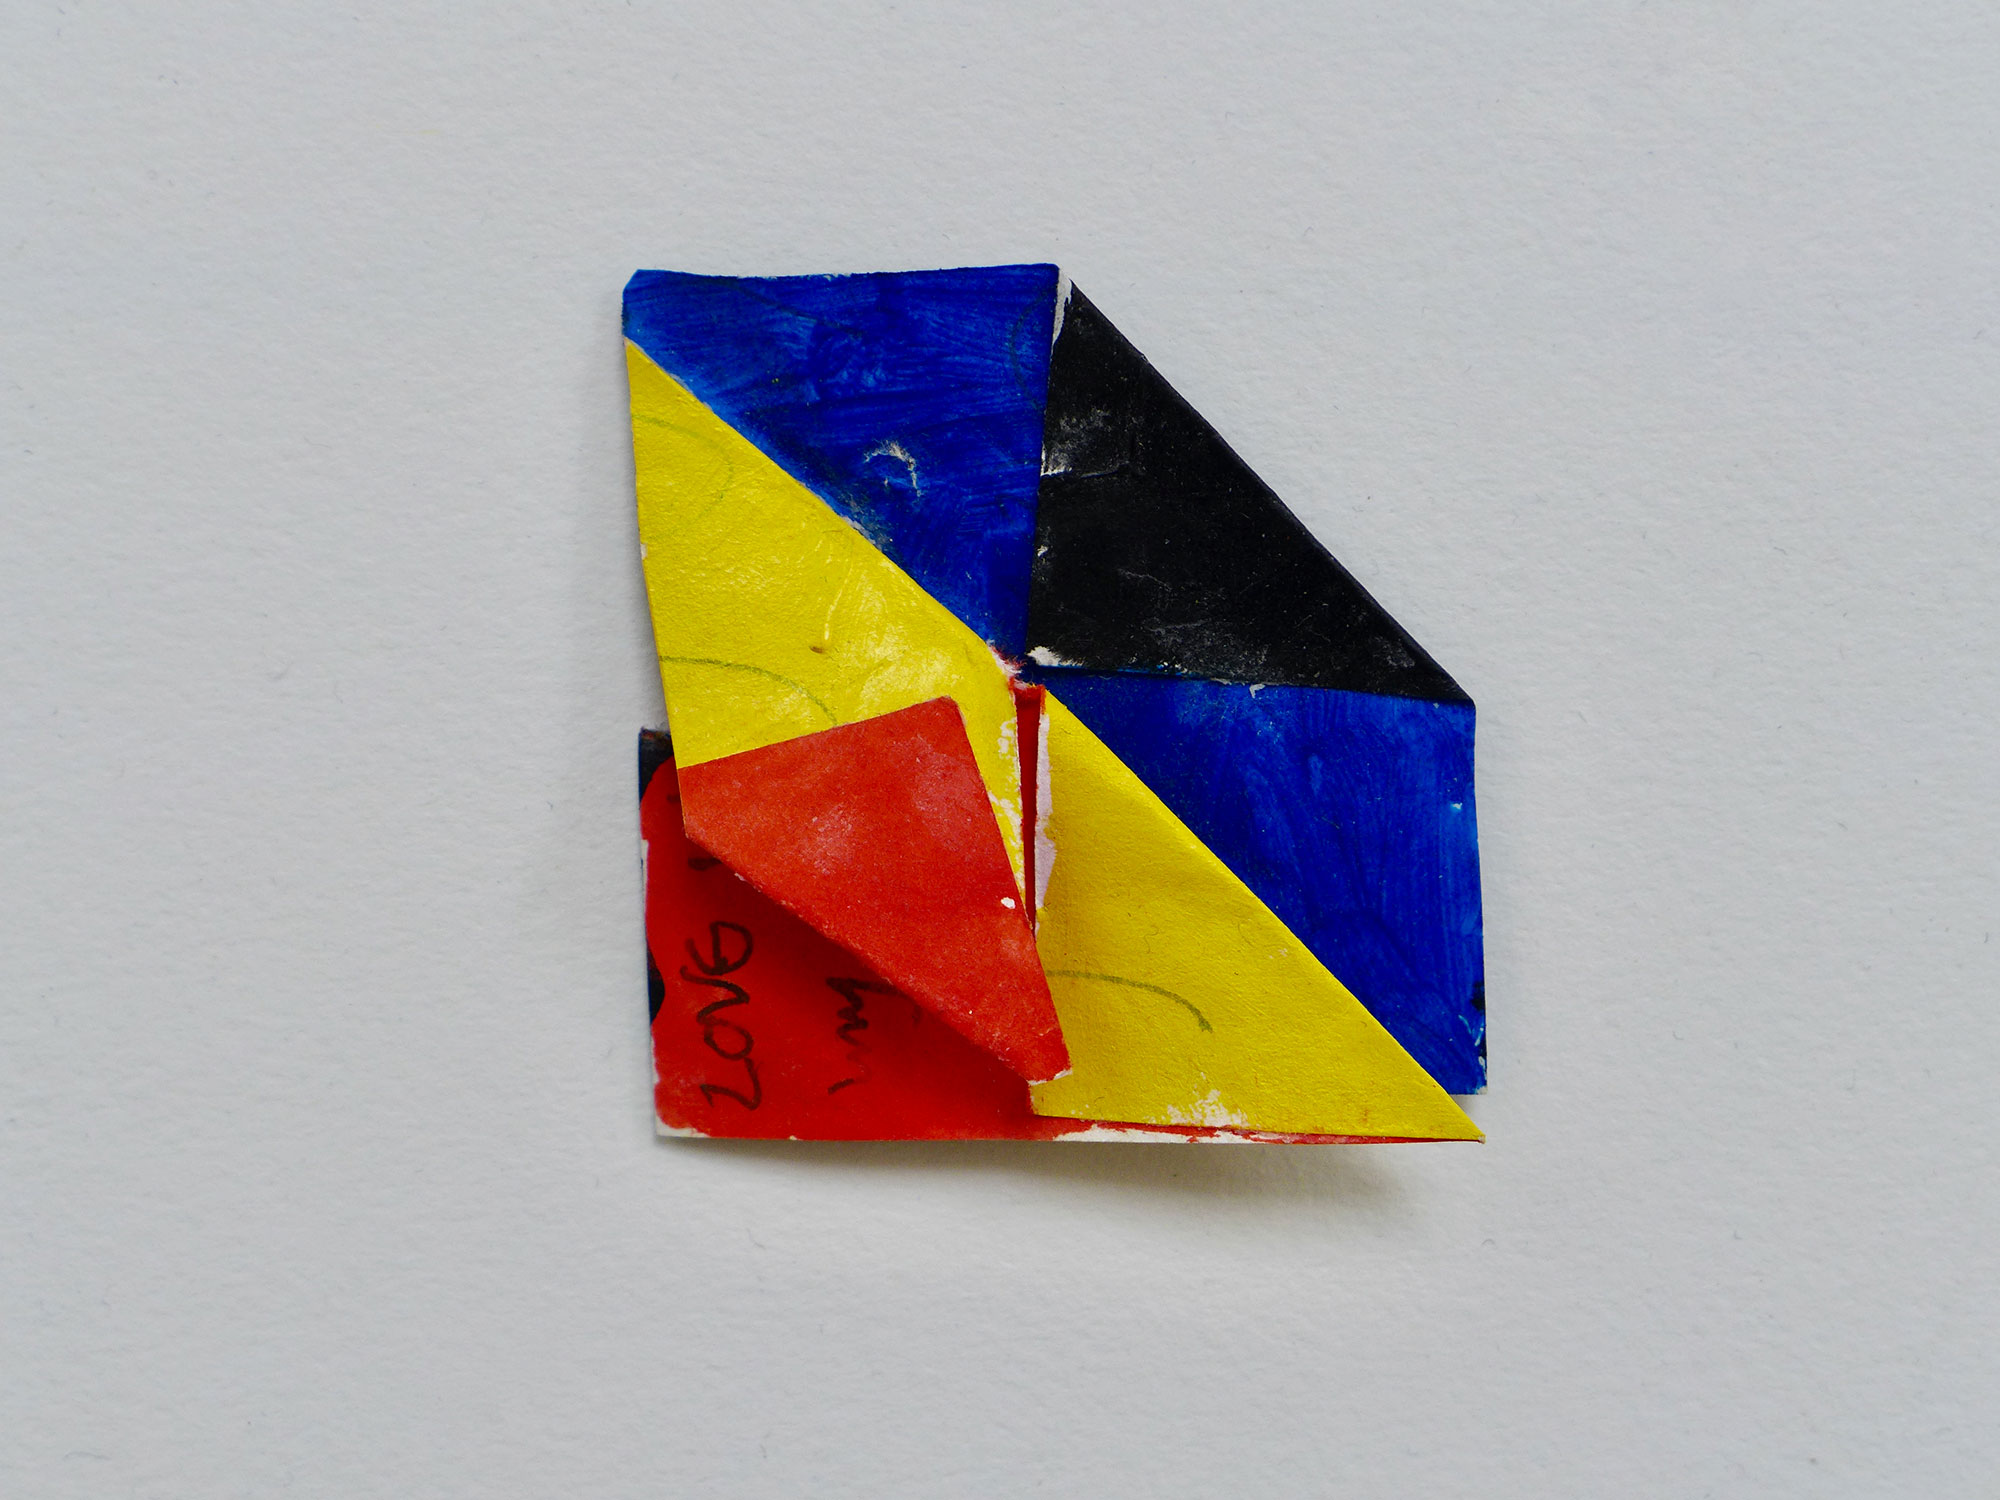 Kenneth Dingwall, Love xx, 2012, gouache on paper, 4.5cm x 4.5cm